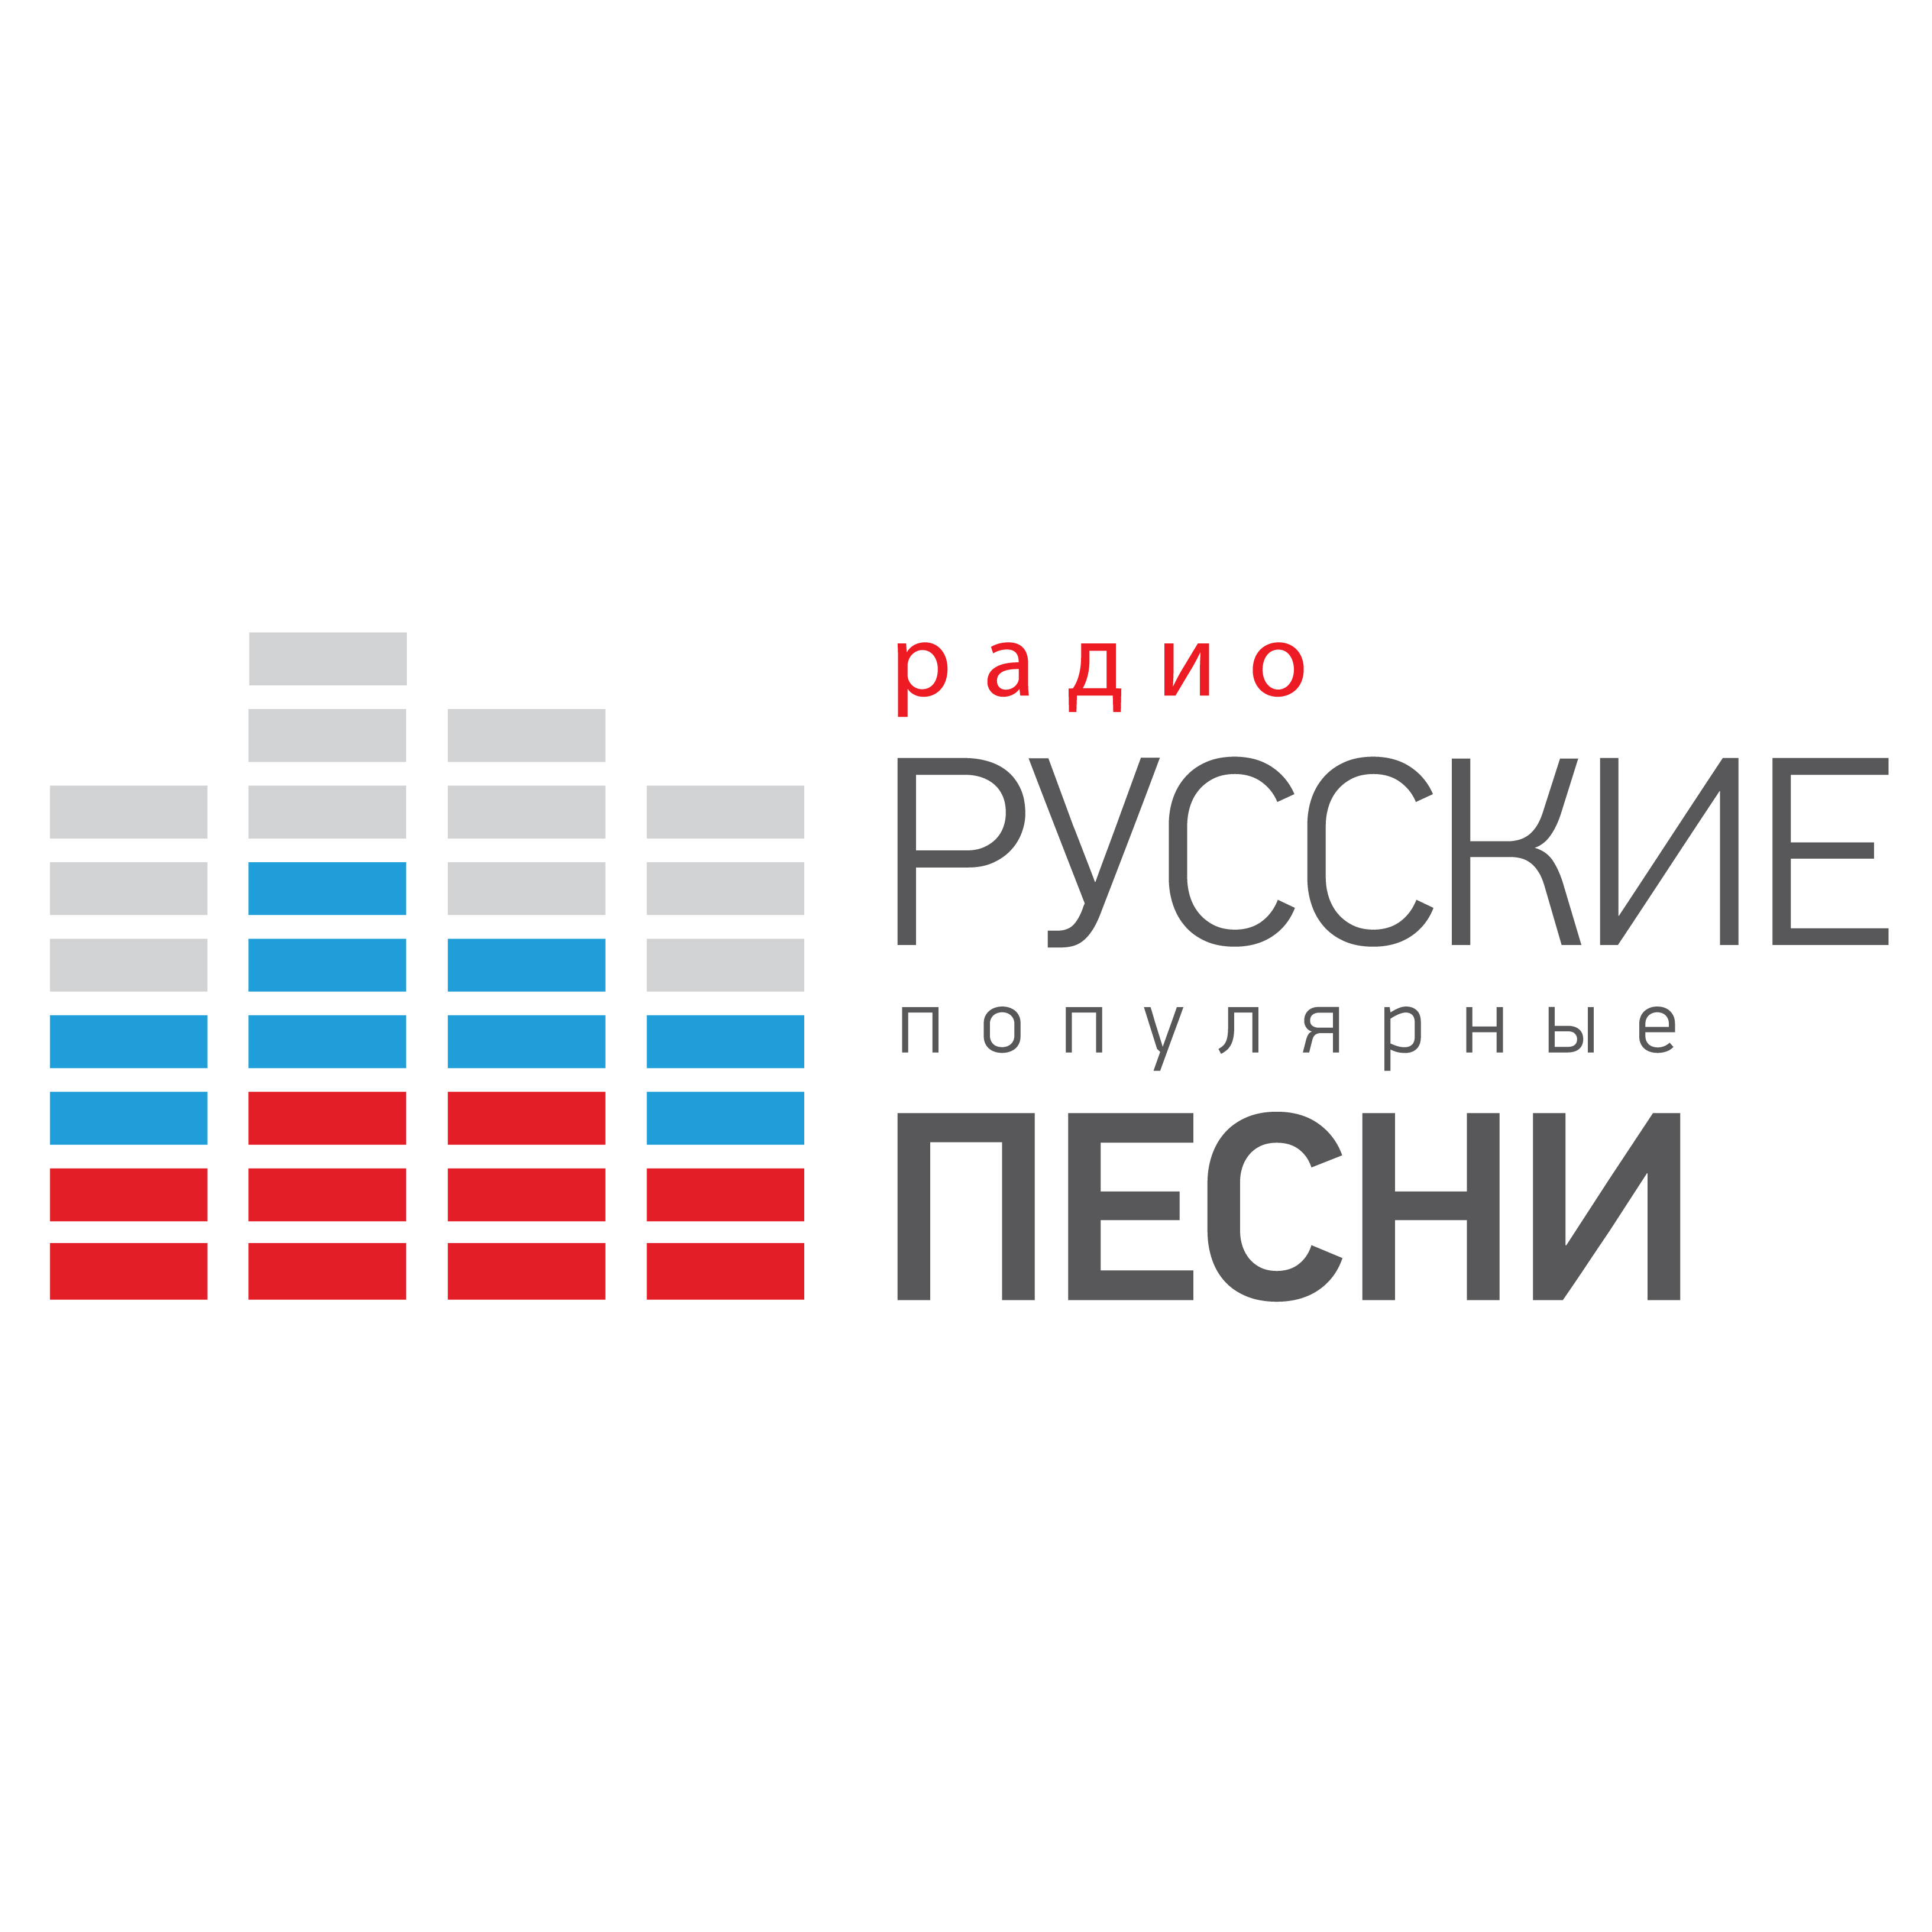 Русские популярные песни